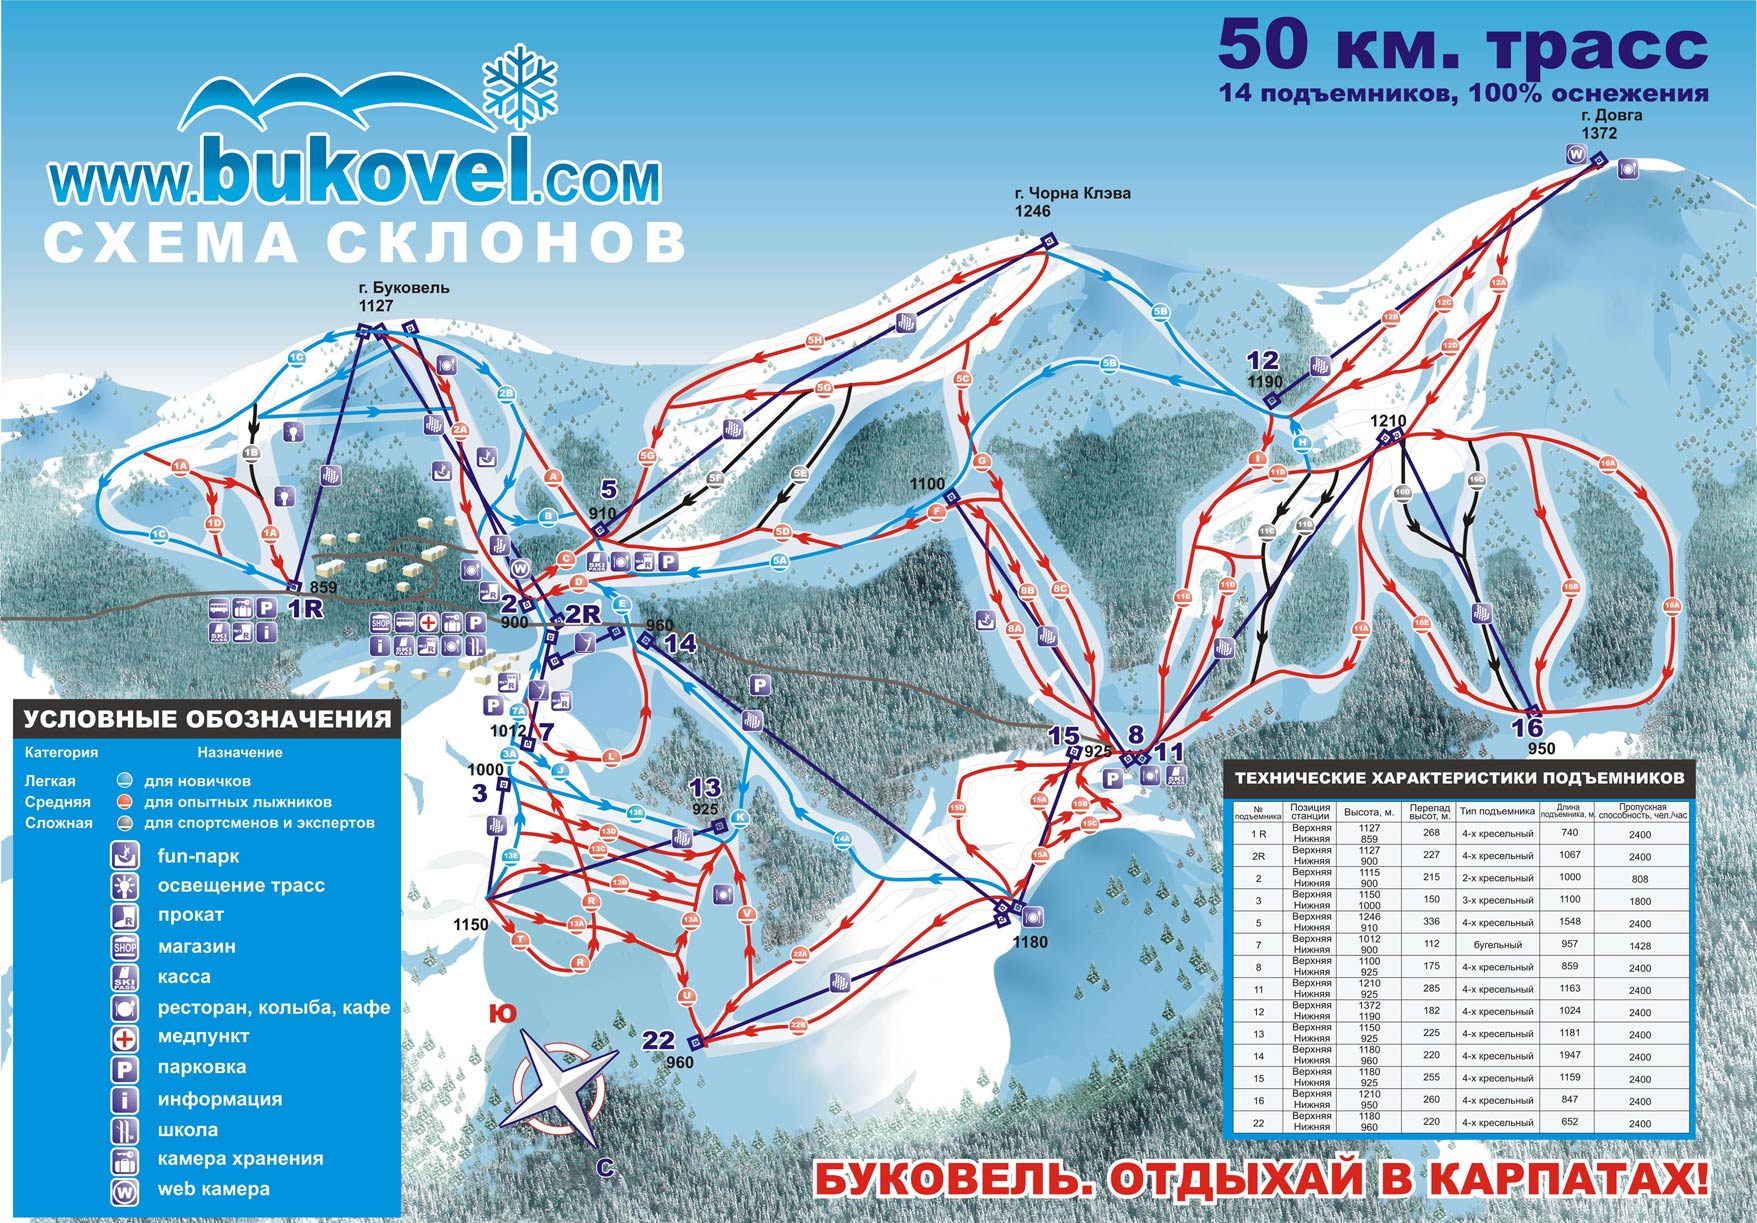 Карта-схема склонов и лыжных трасс Буковеля